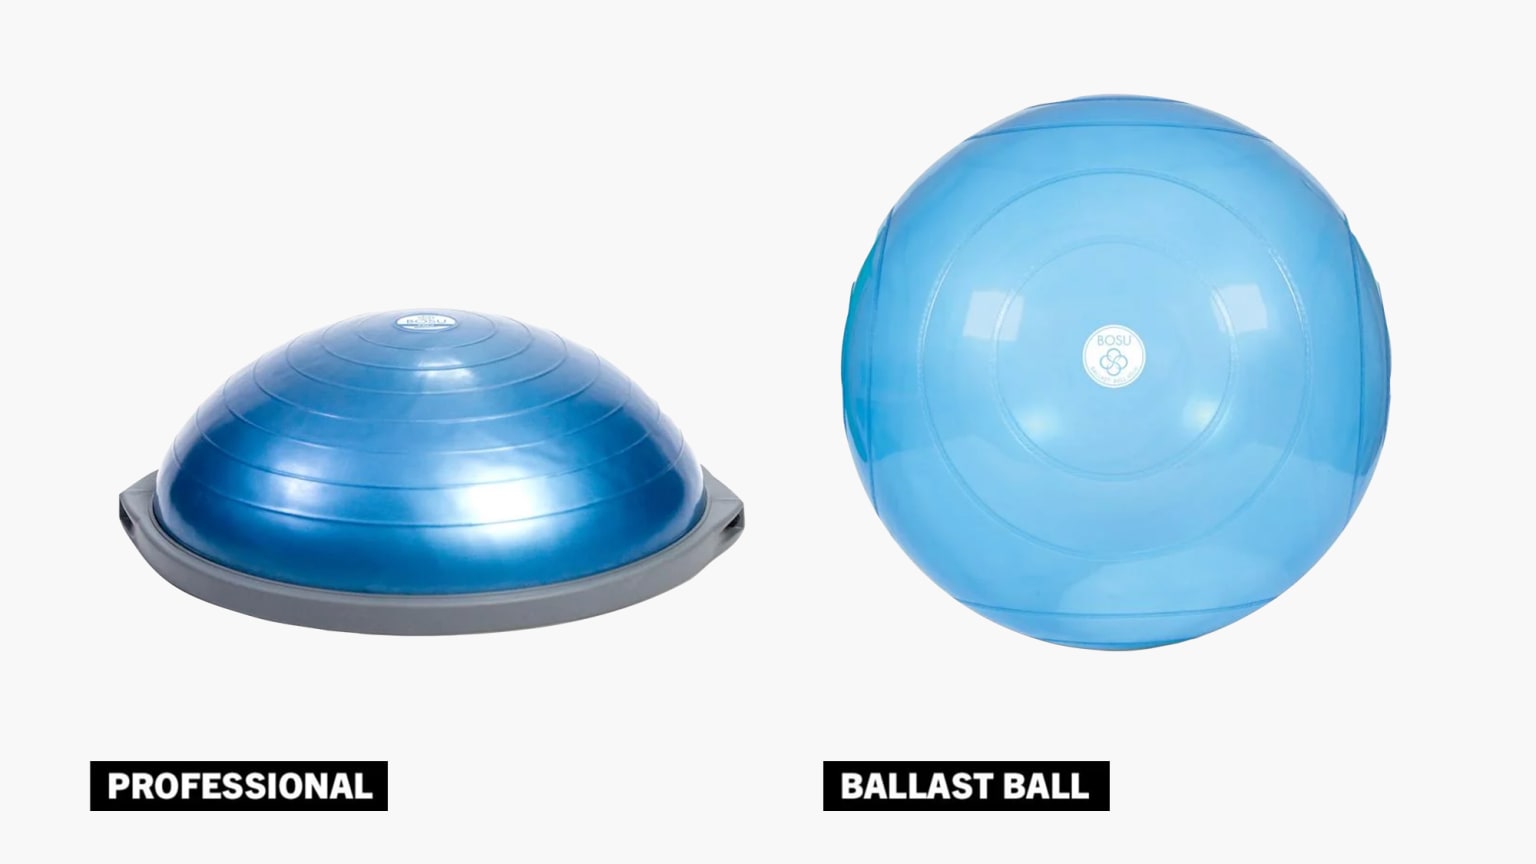 Bosu Balls - Balance & Core Training Device